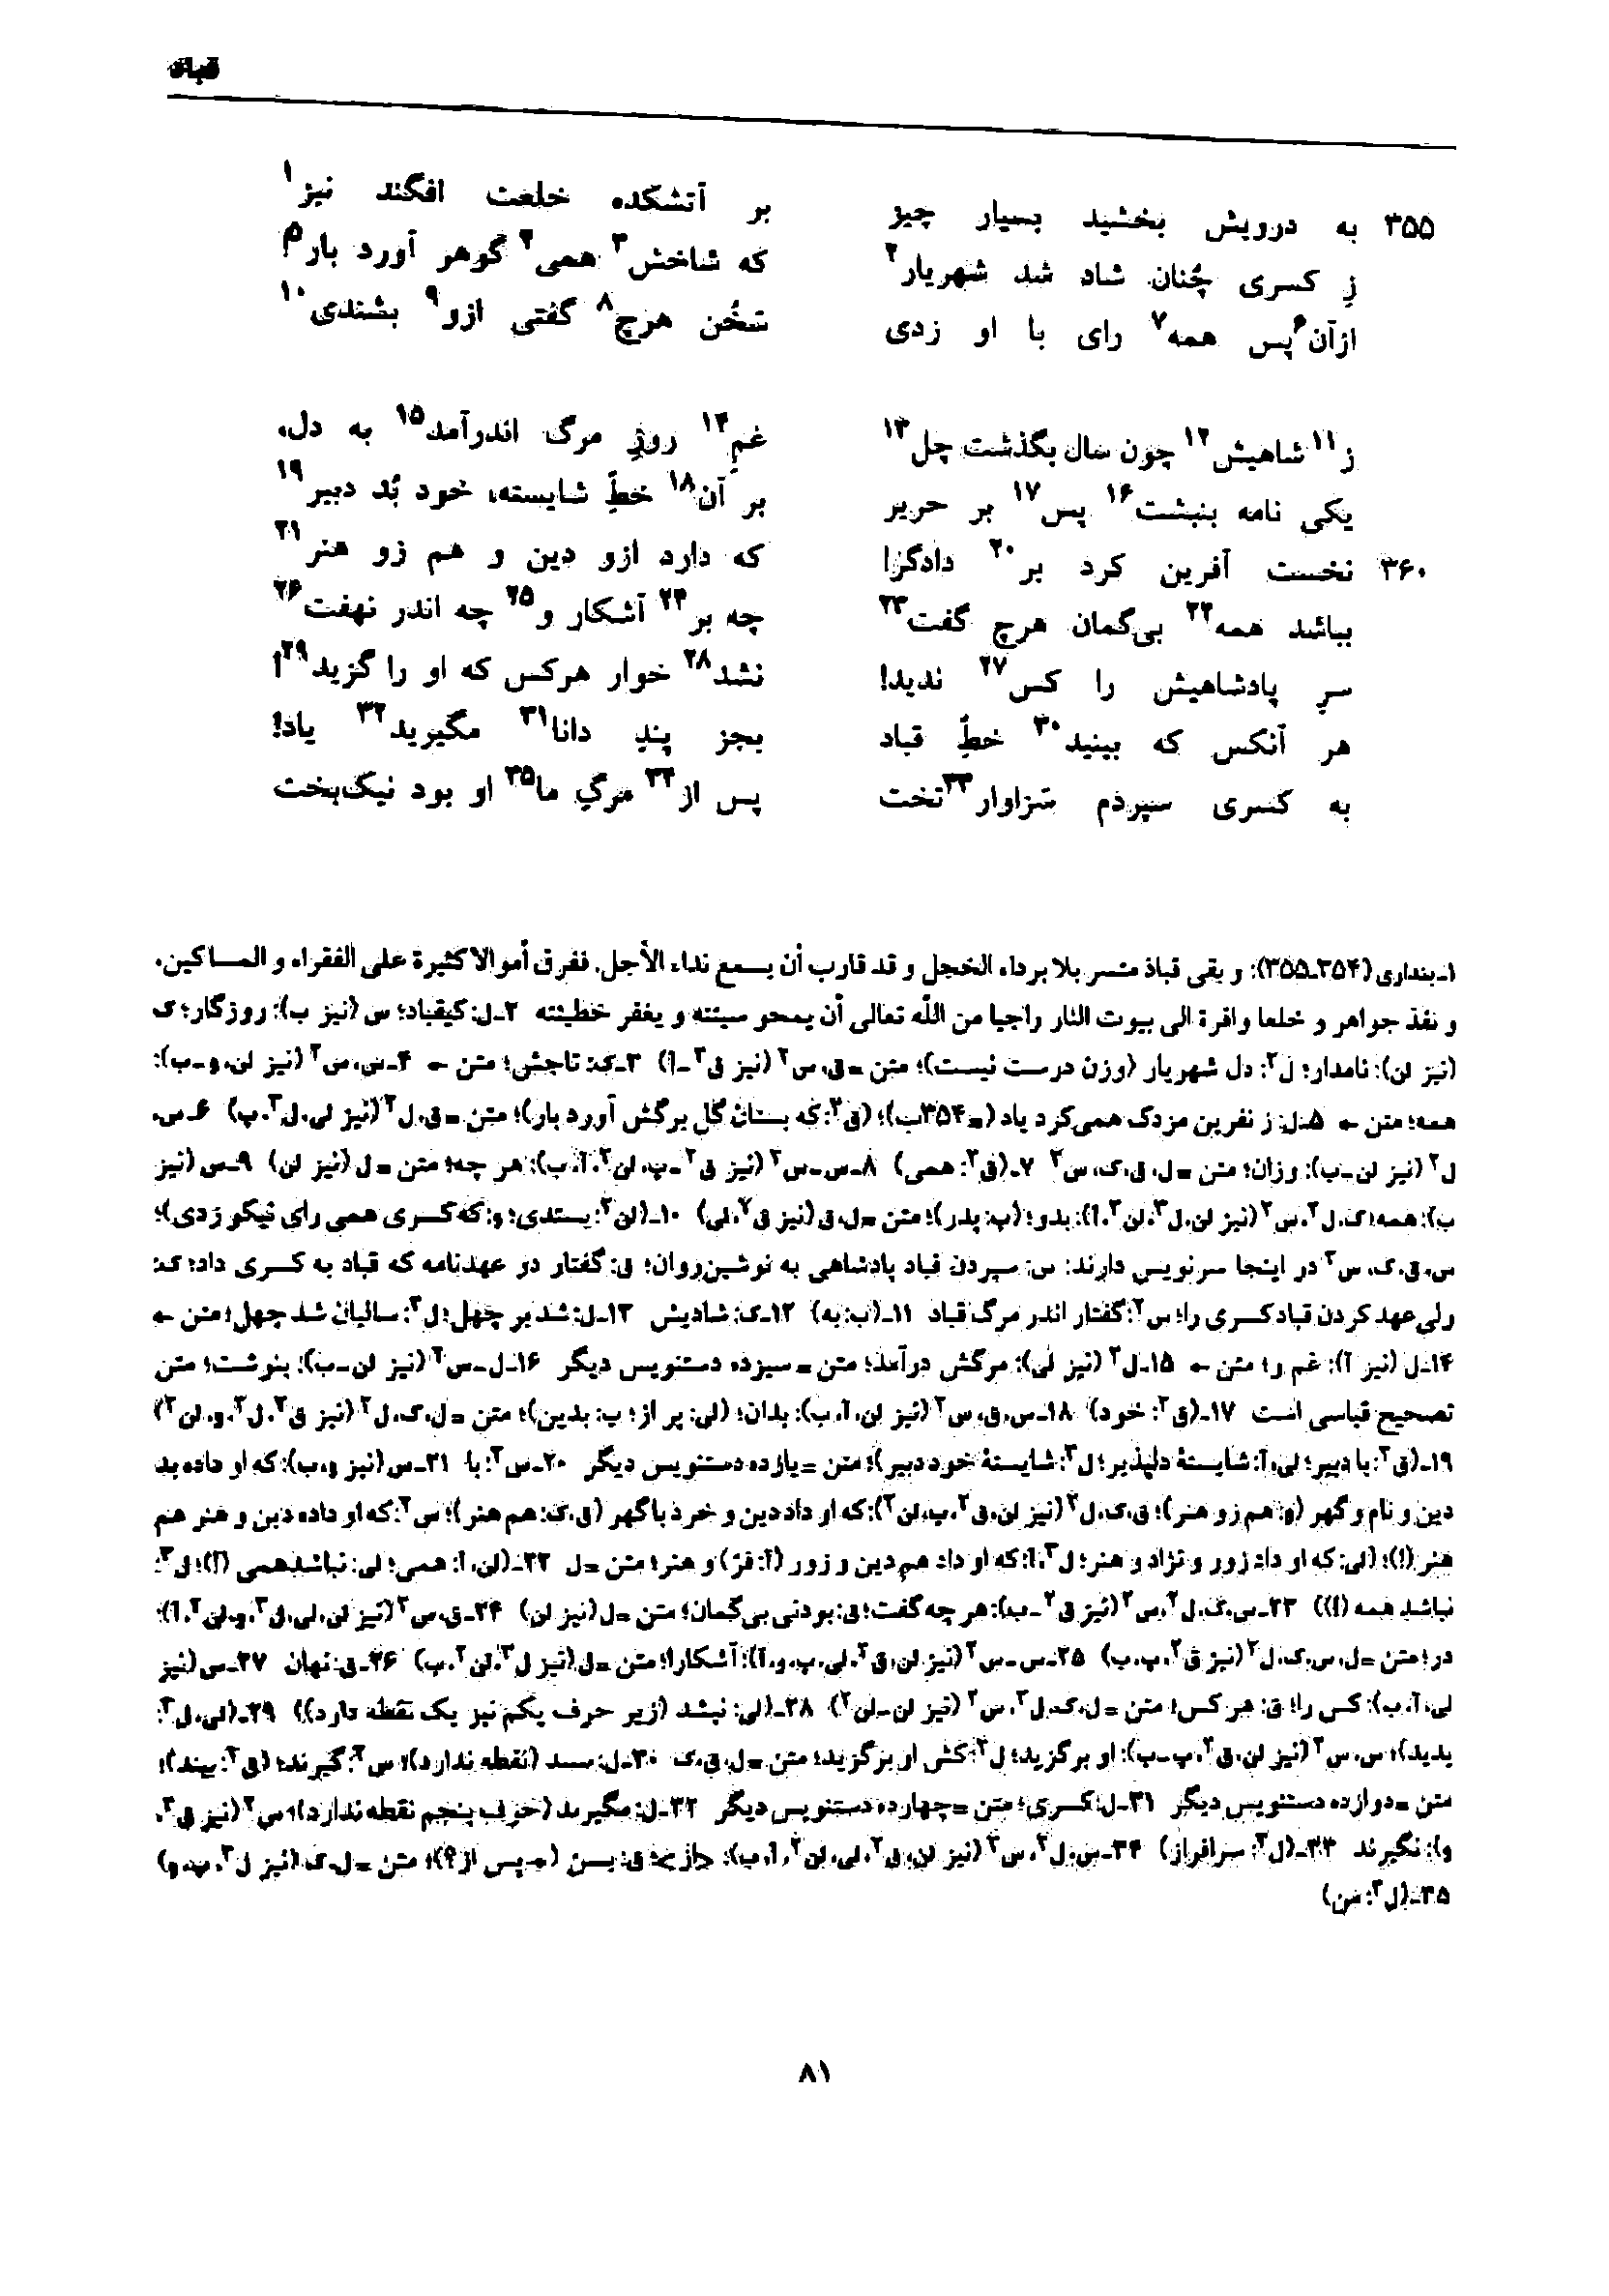 vol. 7, p. 81